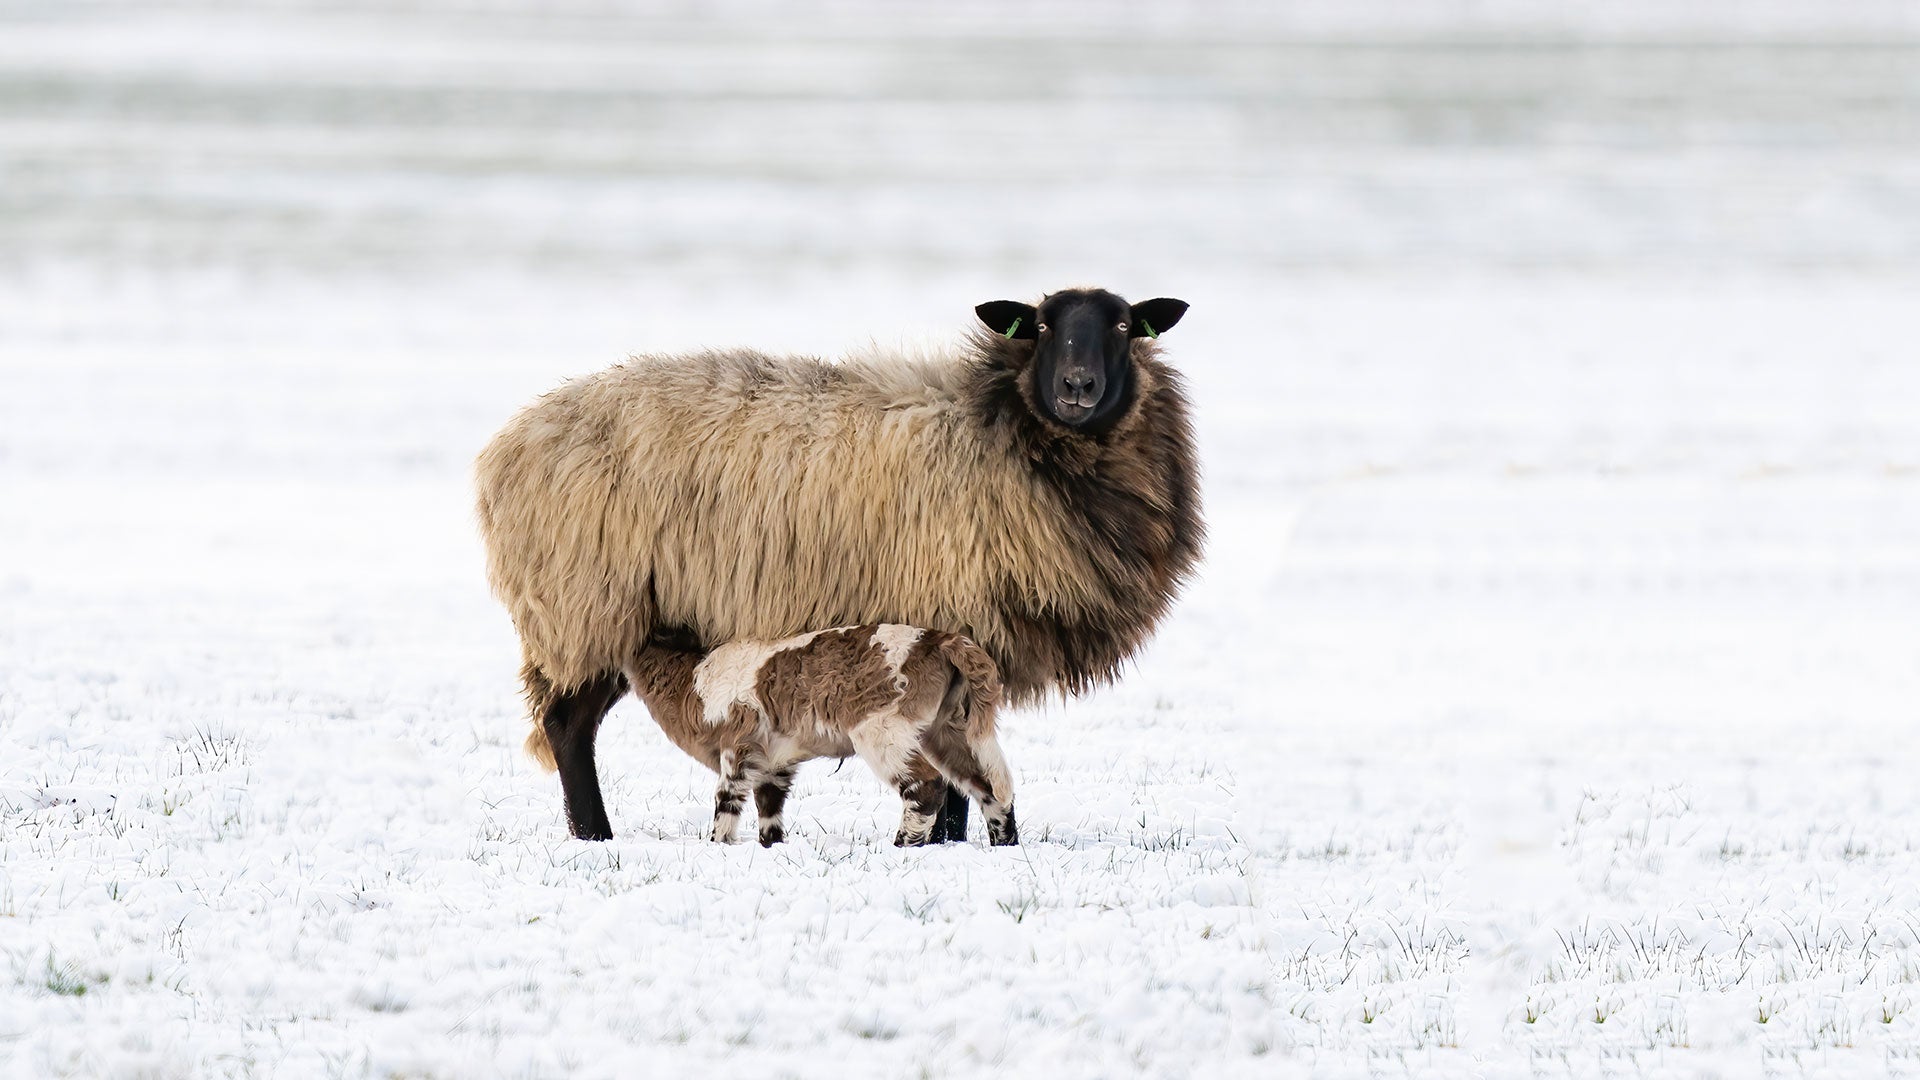 Ewe and lamb in winter